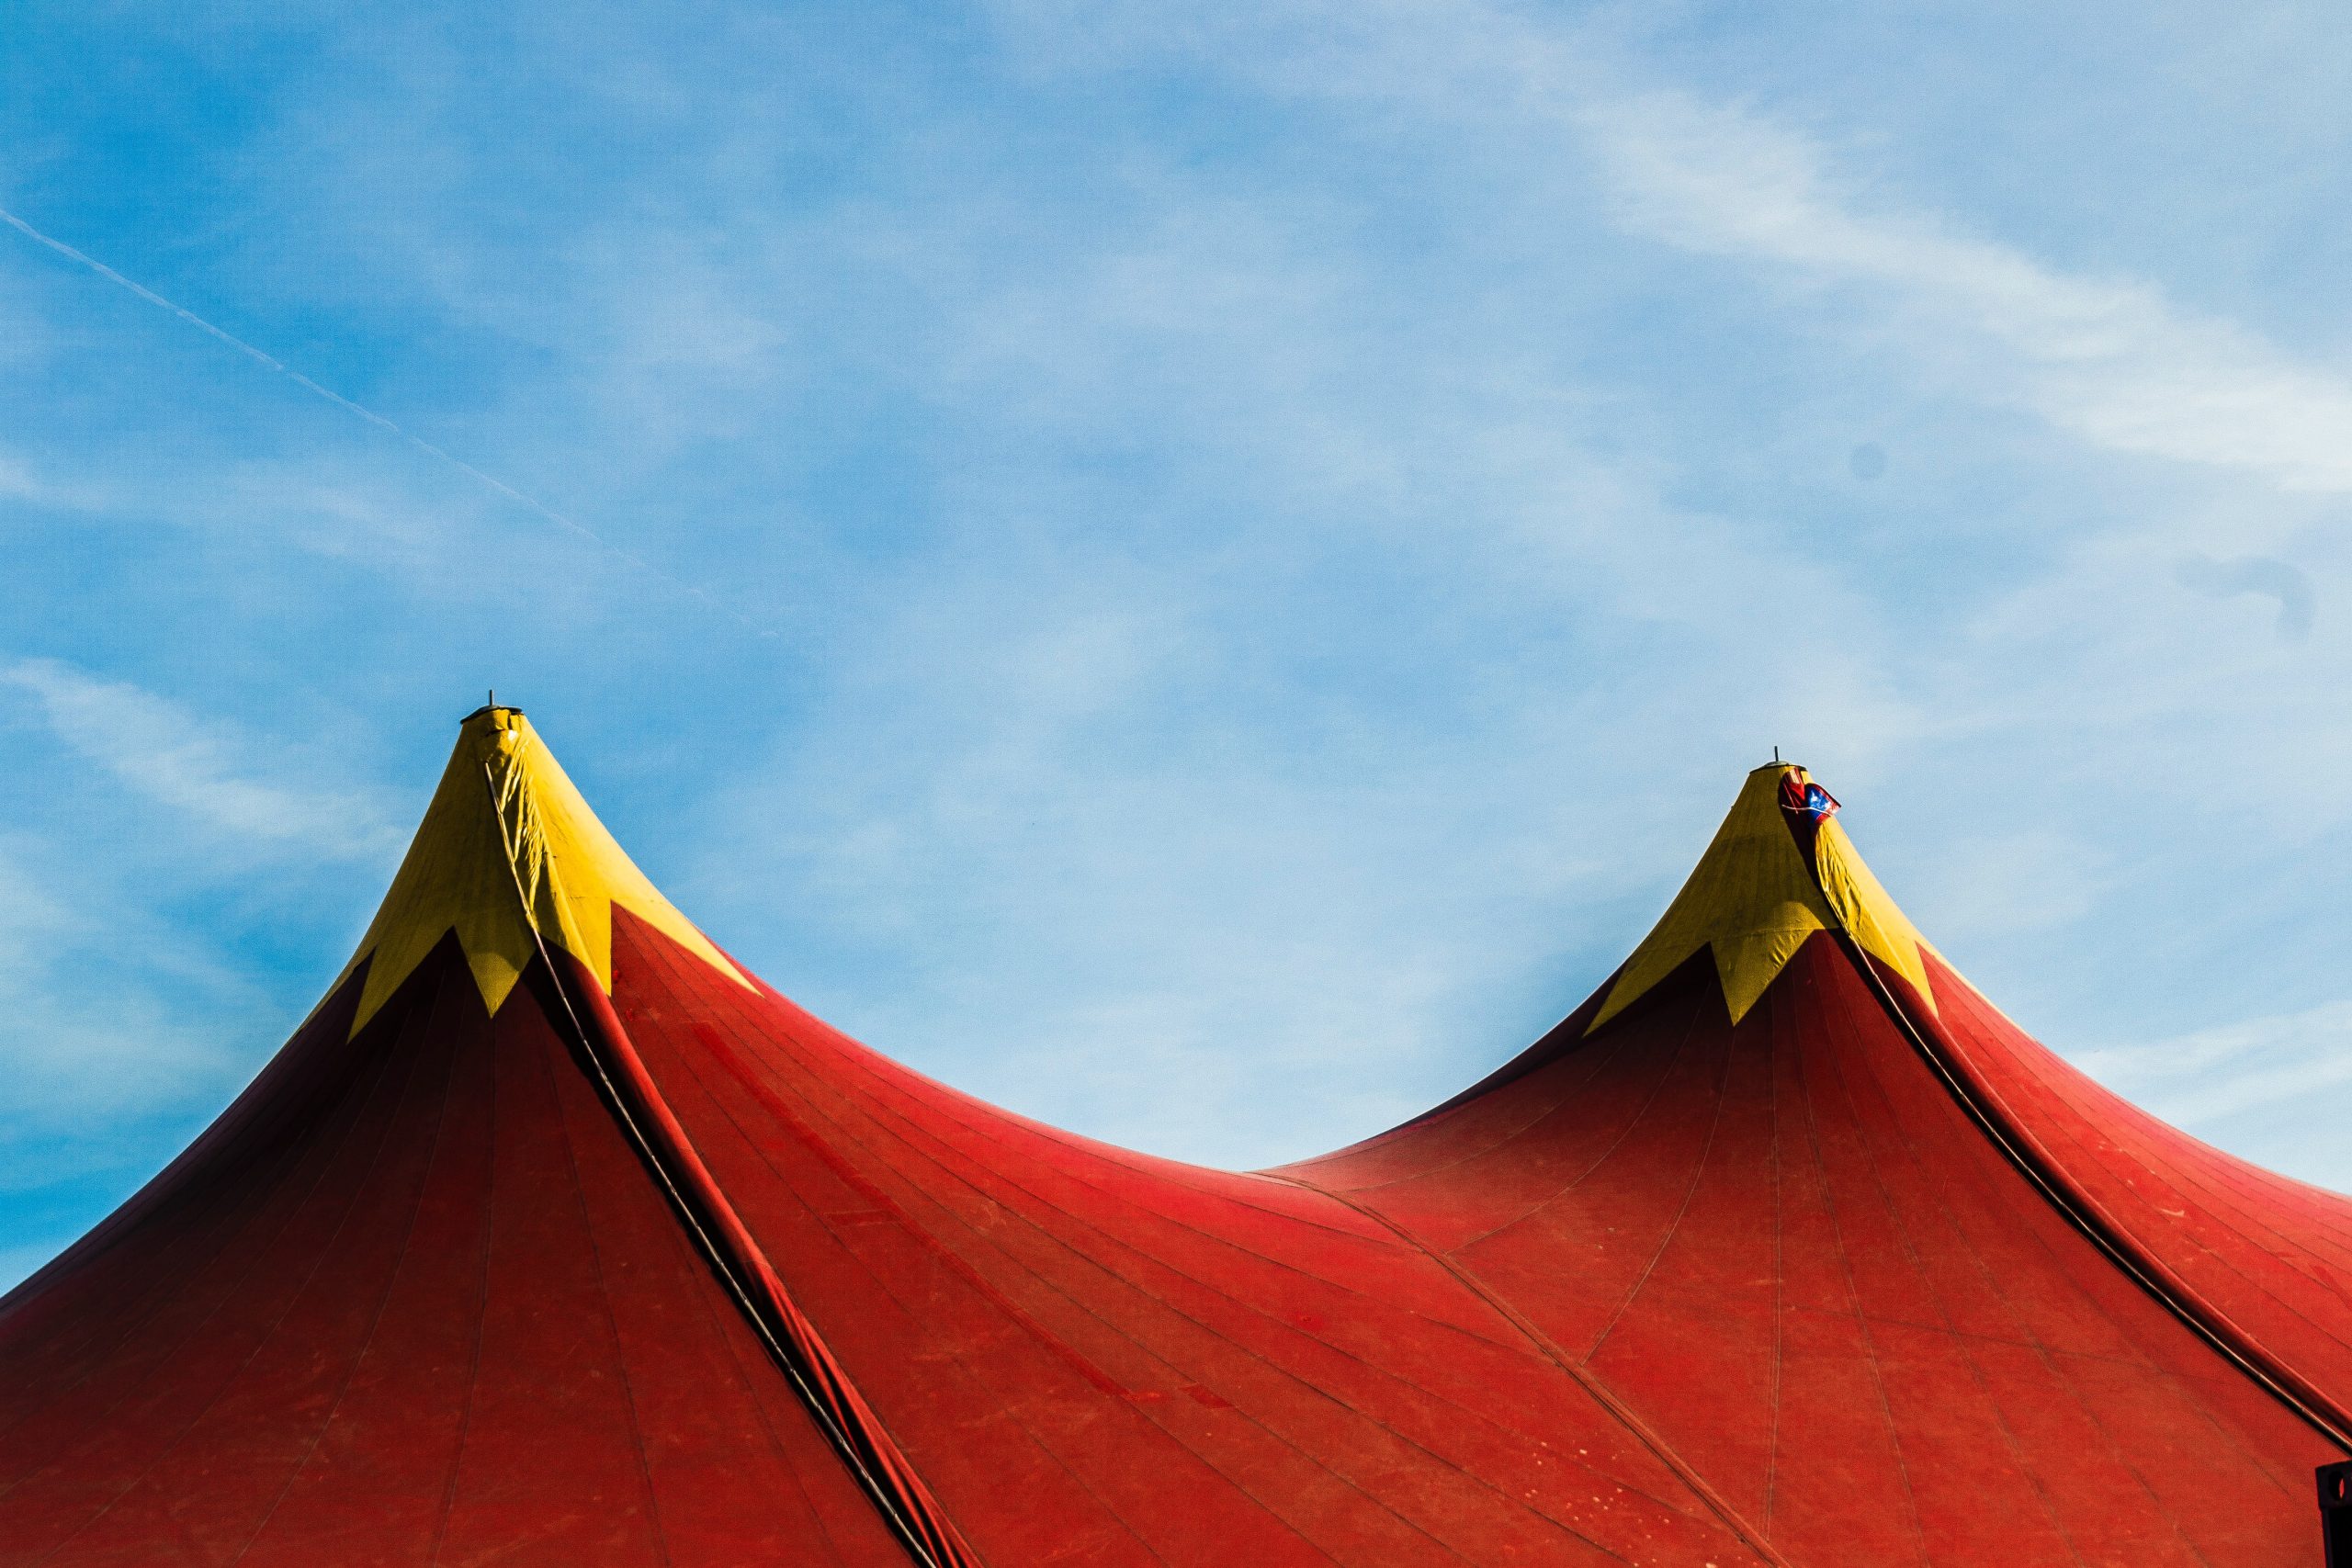 Une photographie représentant deux pics au sommet d'une tente de cirque. Les pics sont d'une couleur écarlate vive et les pointes sont d'un jaune moutarde. Au-dessus du chapiteau, le ciel est d'un bleu éclatant avec un subtil saupoudrage de nuages blancs.